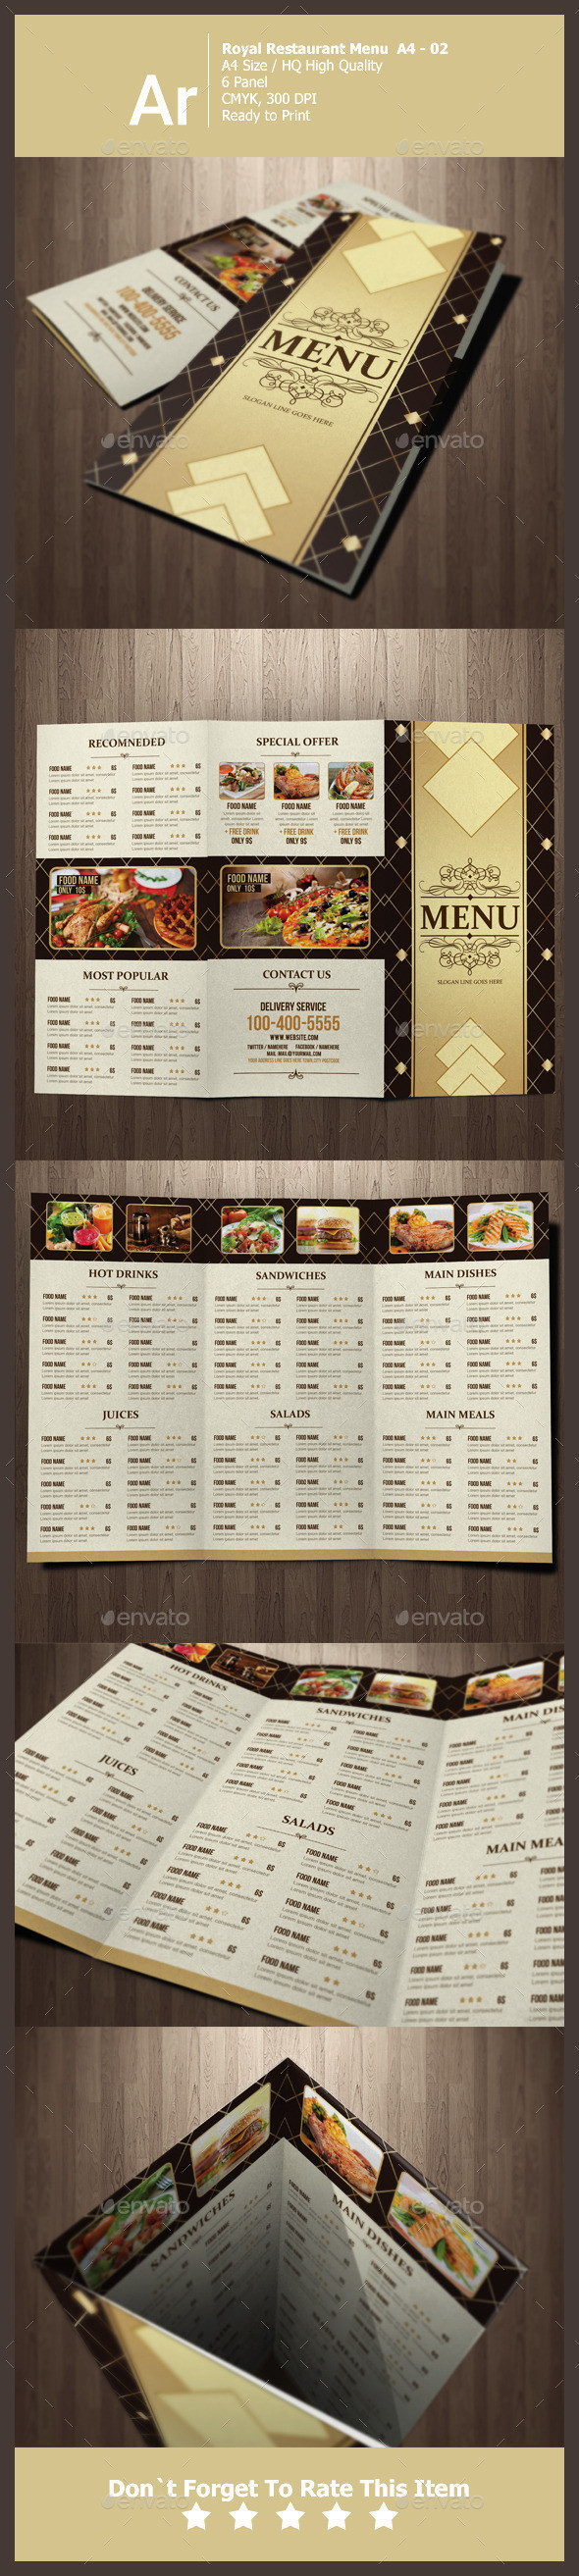 Royal restaurant menu preview